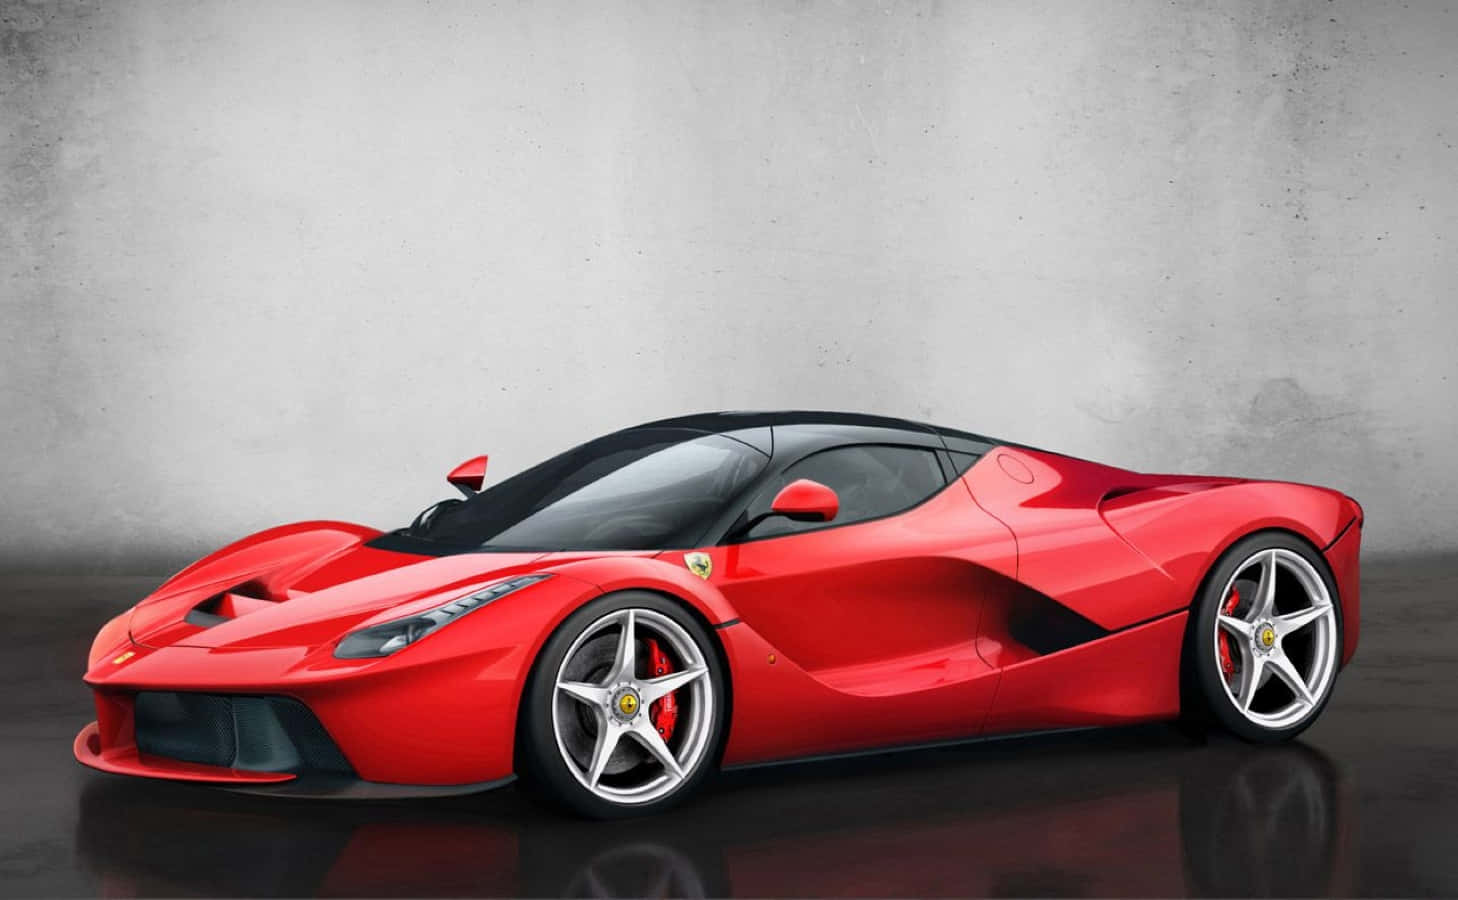 Stunning Red Ferrari Enzo in Motion Wallpaper